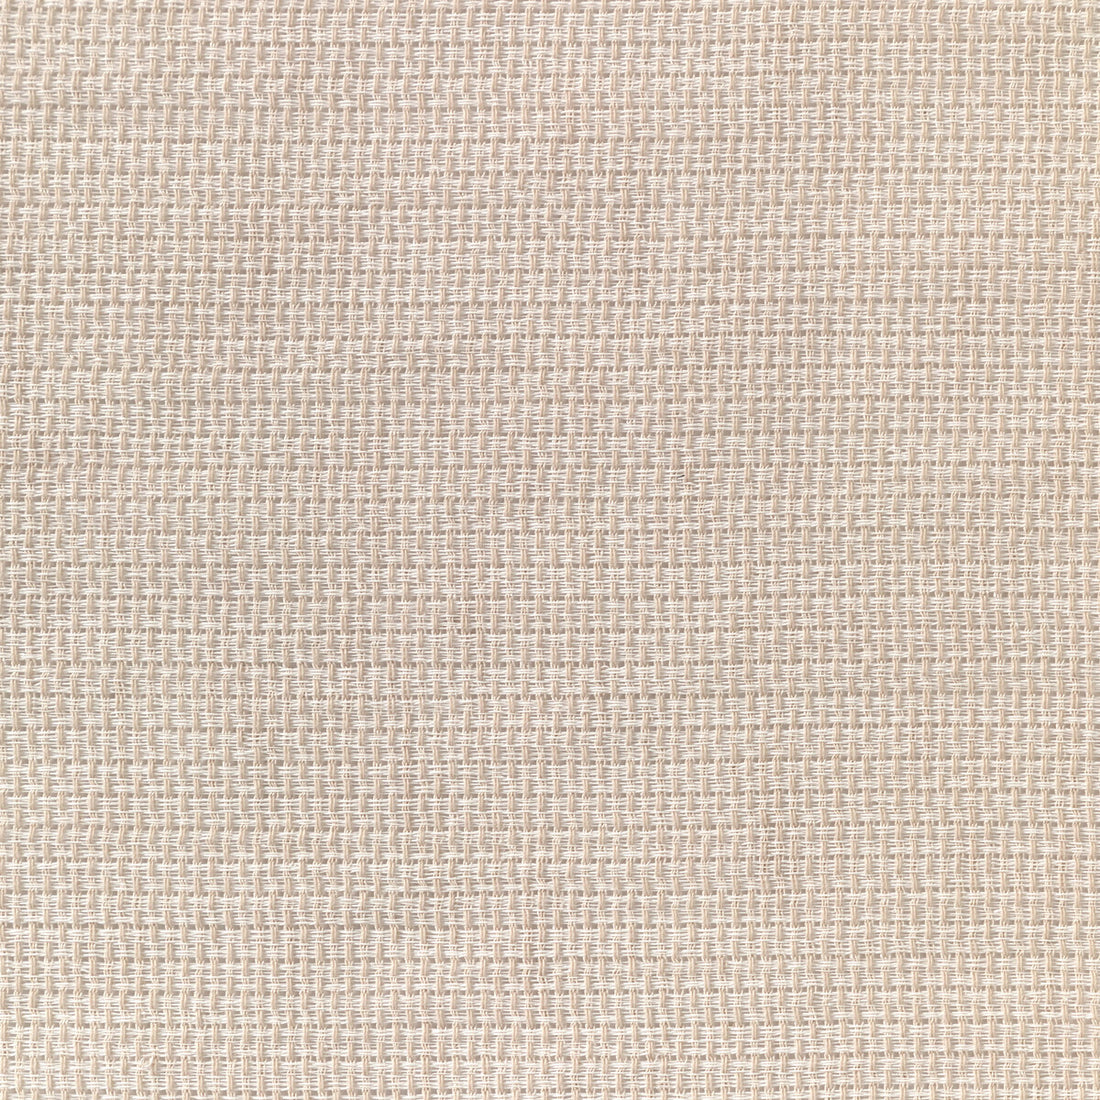 Kravet Basics fabric in 4882-1 color - pattern 4882.1.0 - by Kravet Basics